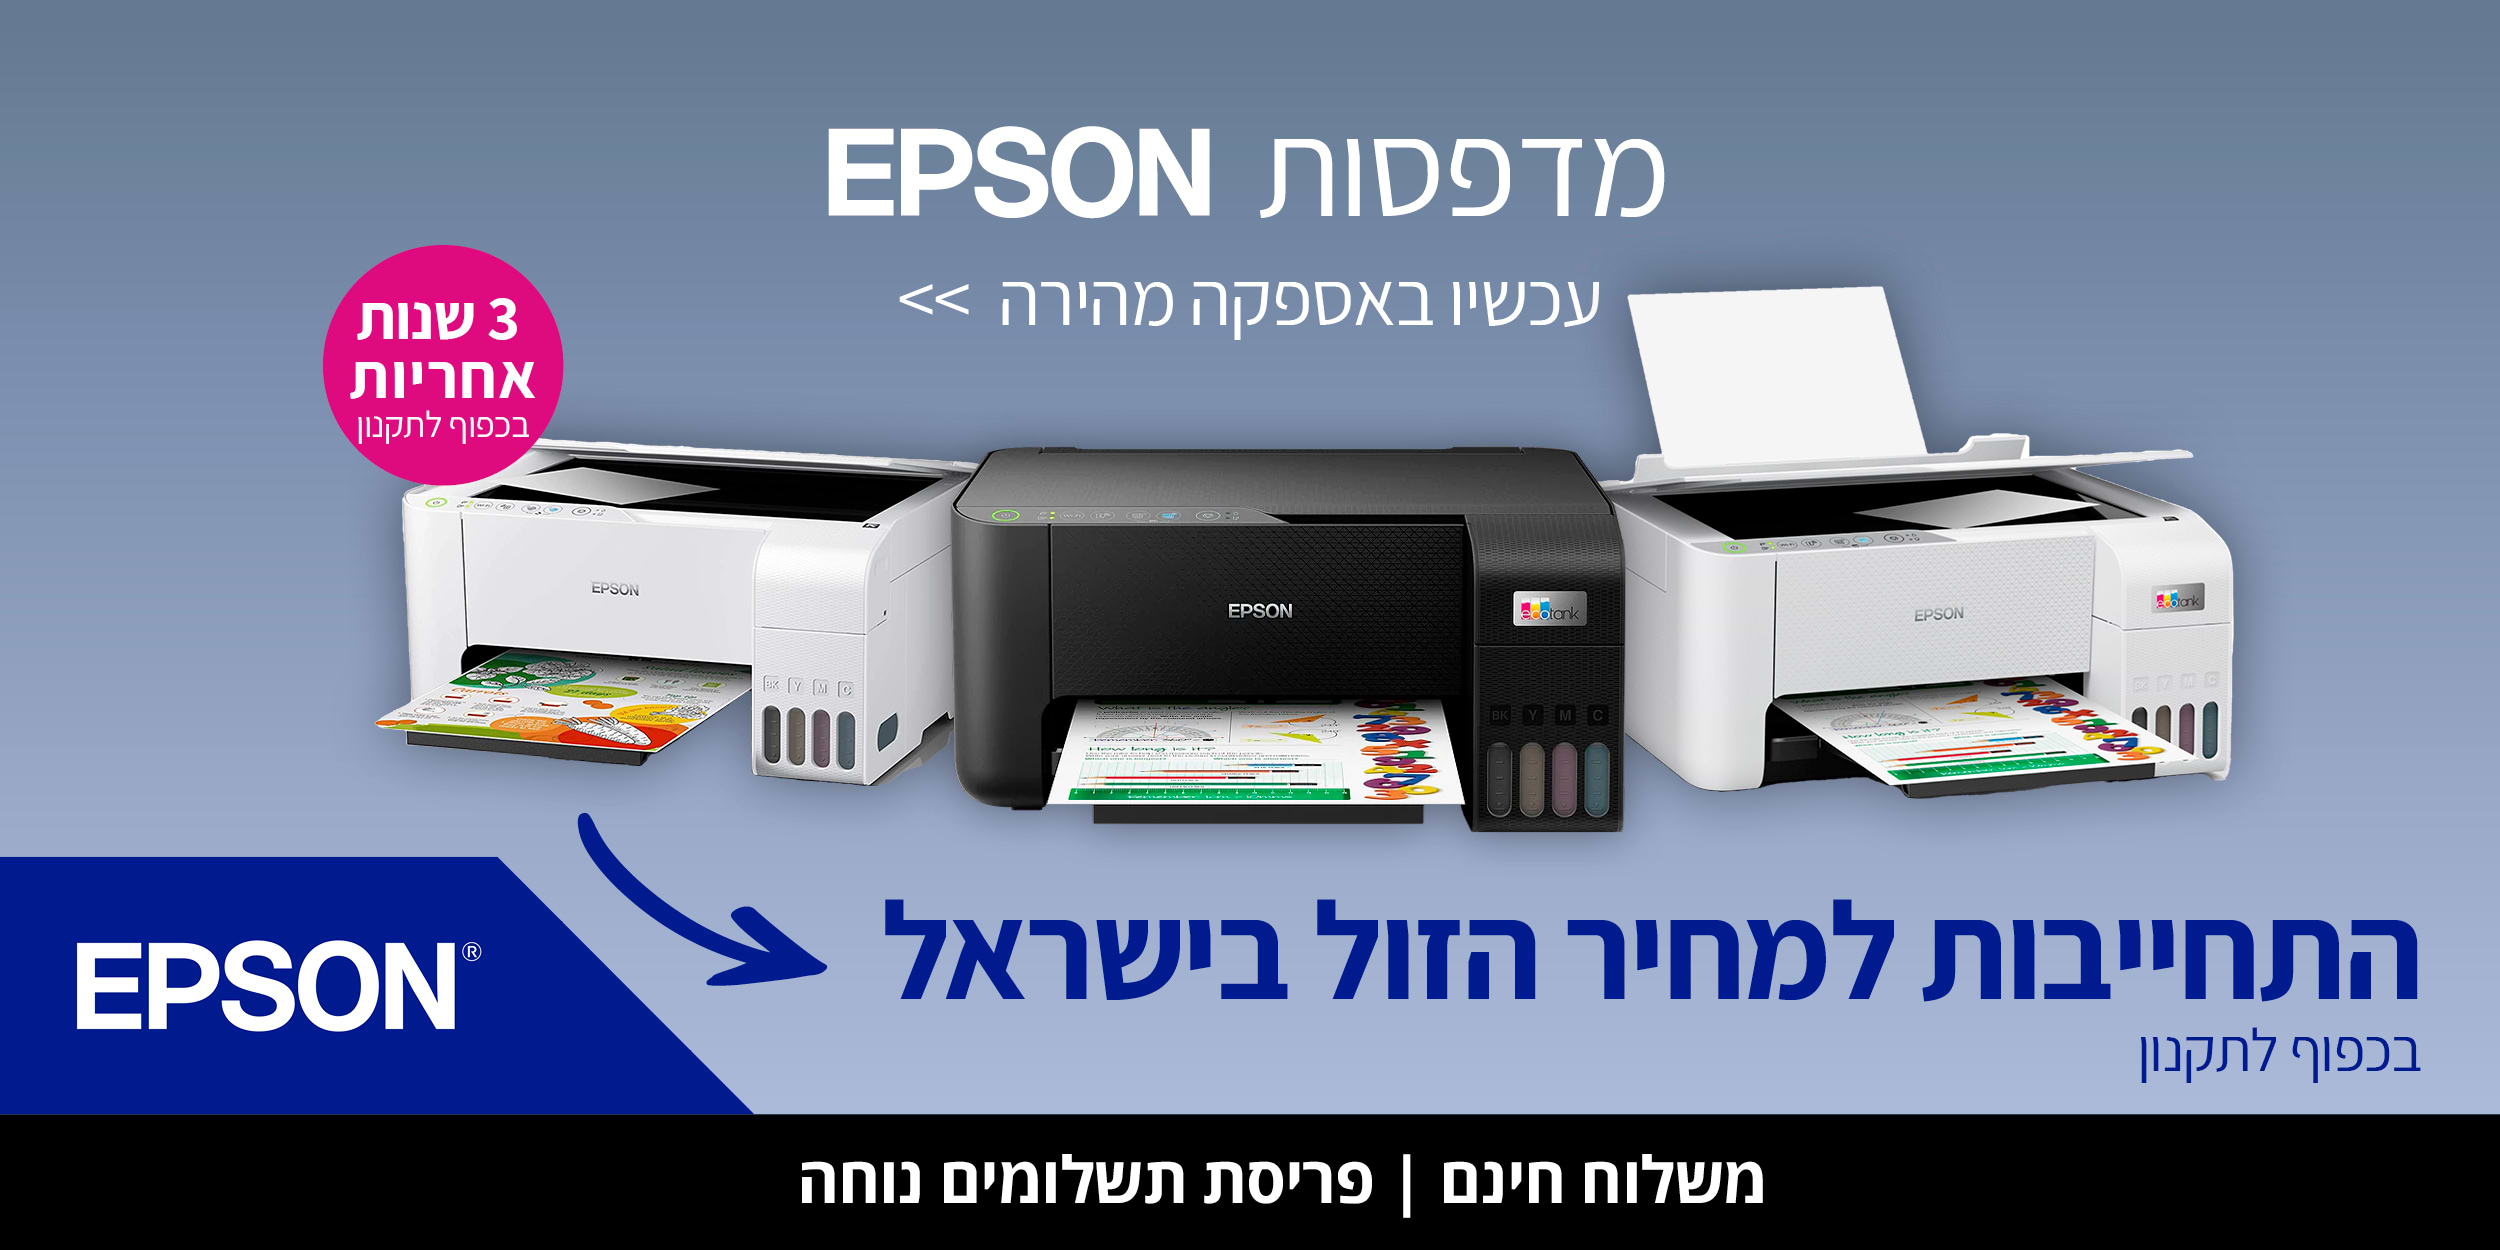 מדפסות EPSON עכשיו באספקה מהירה. 3 שנות אחריות בכפוף לתקנון. התחייבות למחיר הזול בישראל.